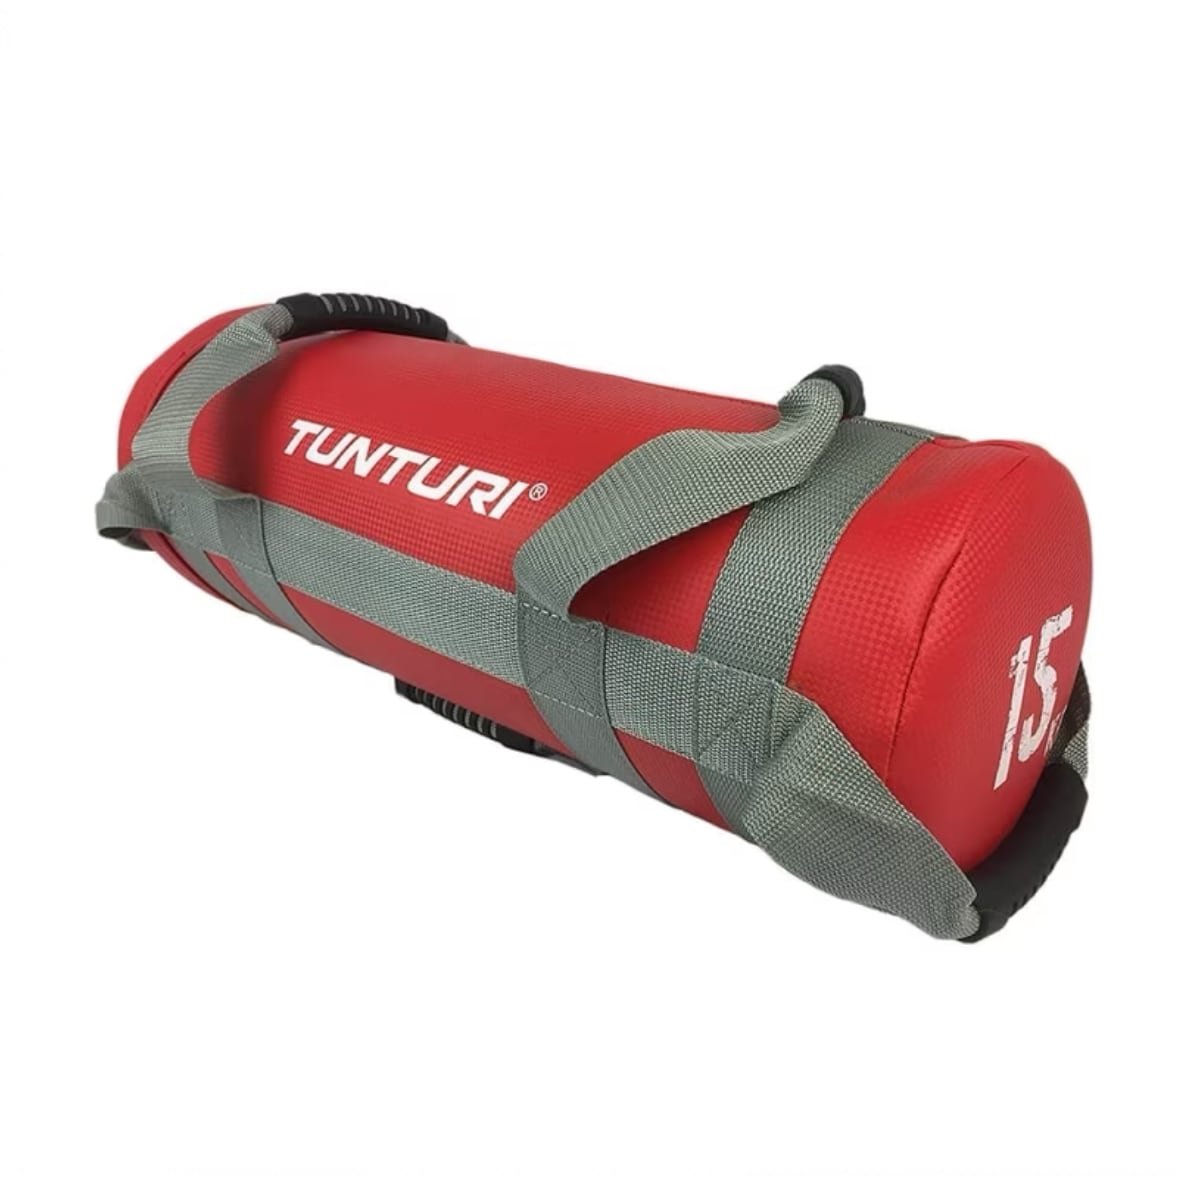 Brug Tunturi Power Strength Bag 15 kg til en forbedret oplevelse